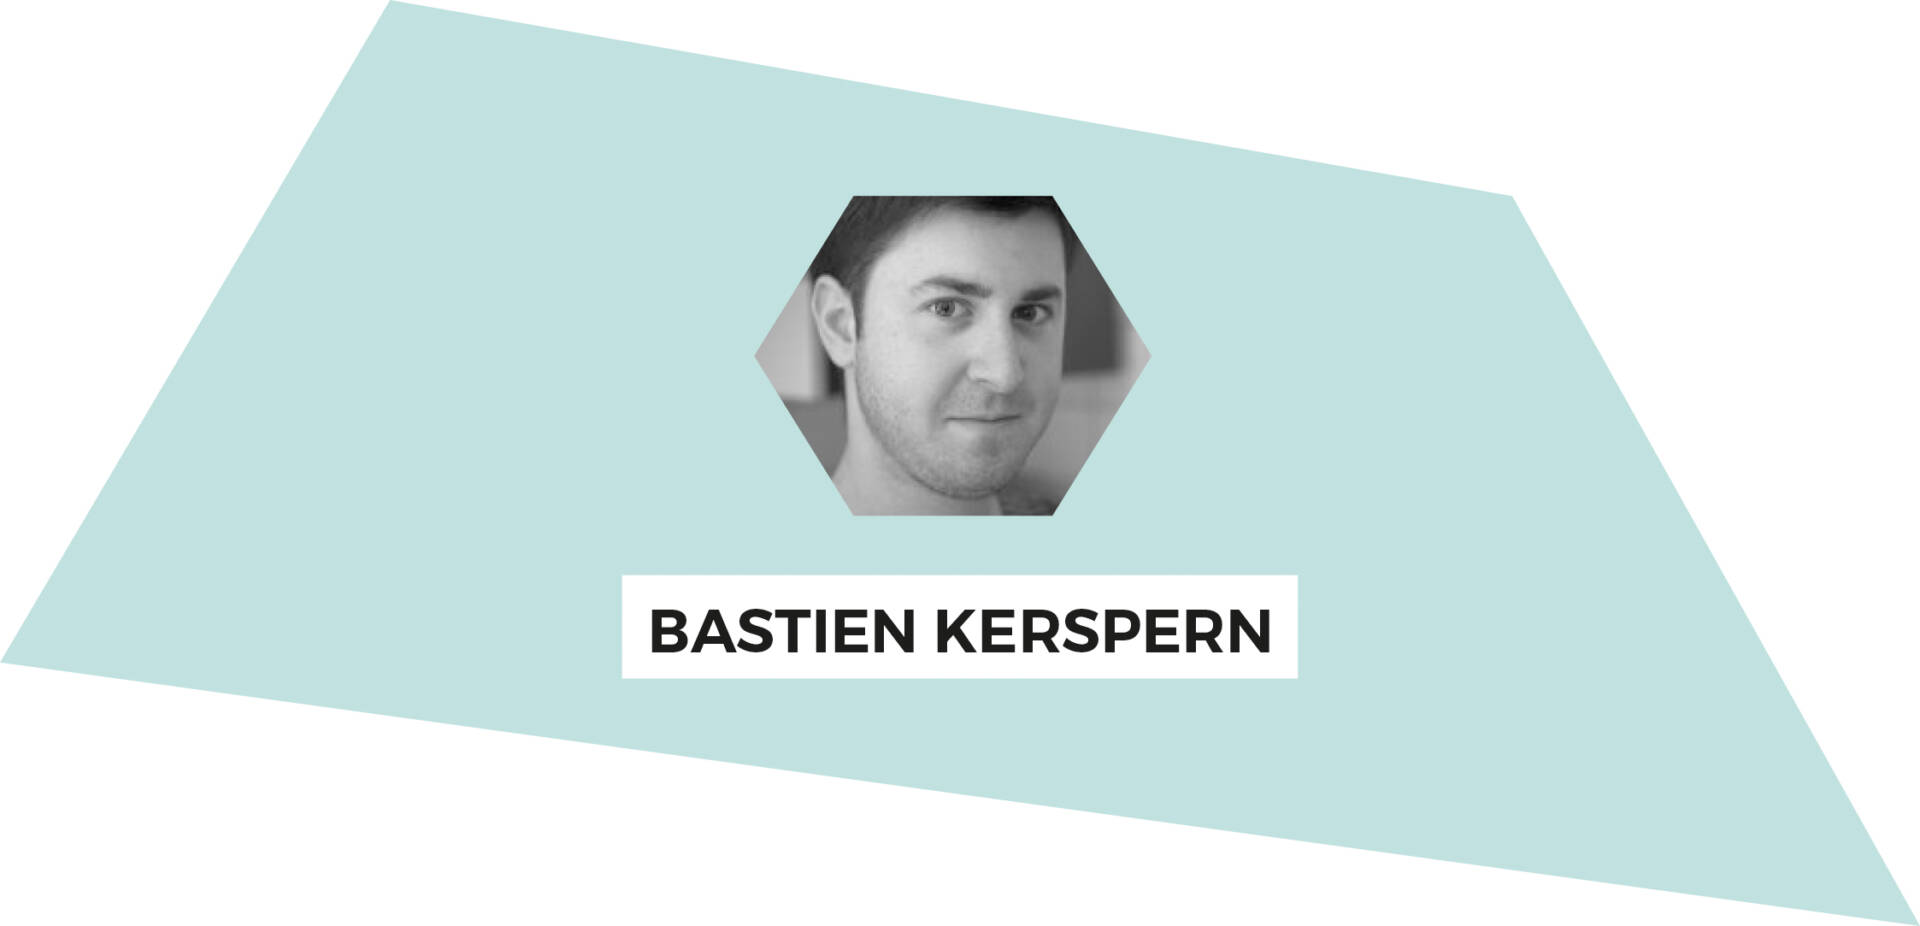 Bastien Kerspern